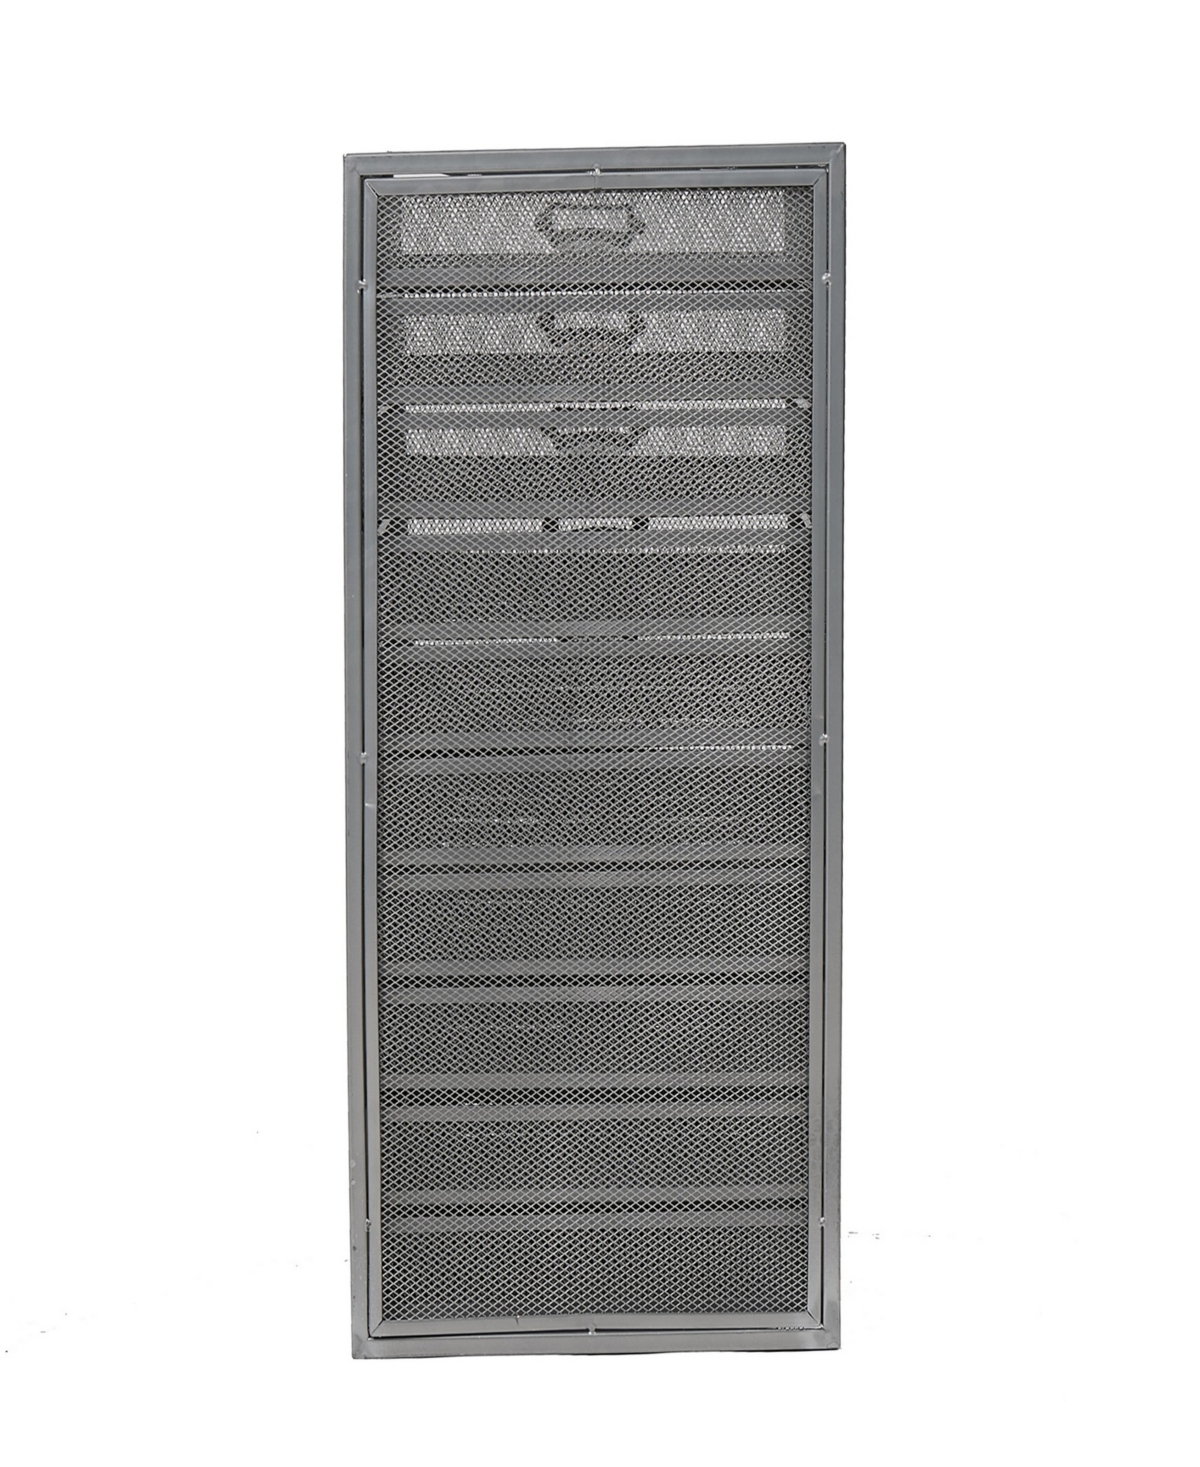 Mesh 10 Drawer Cabinet Metal Storage Drawers File Storage Cart - Silver